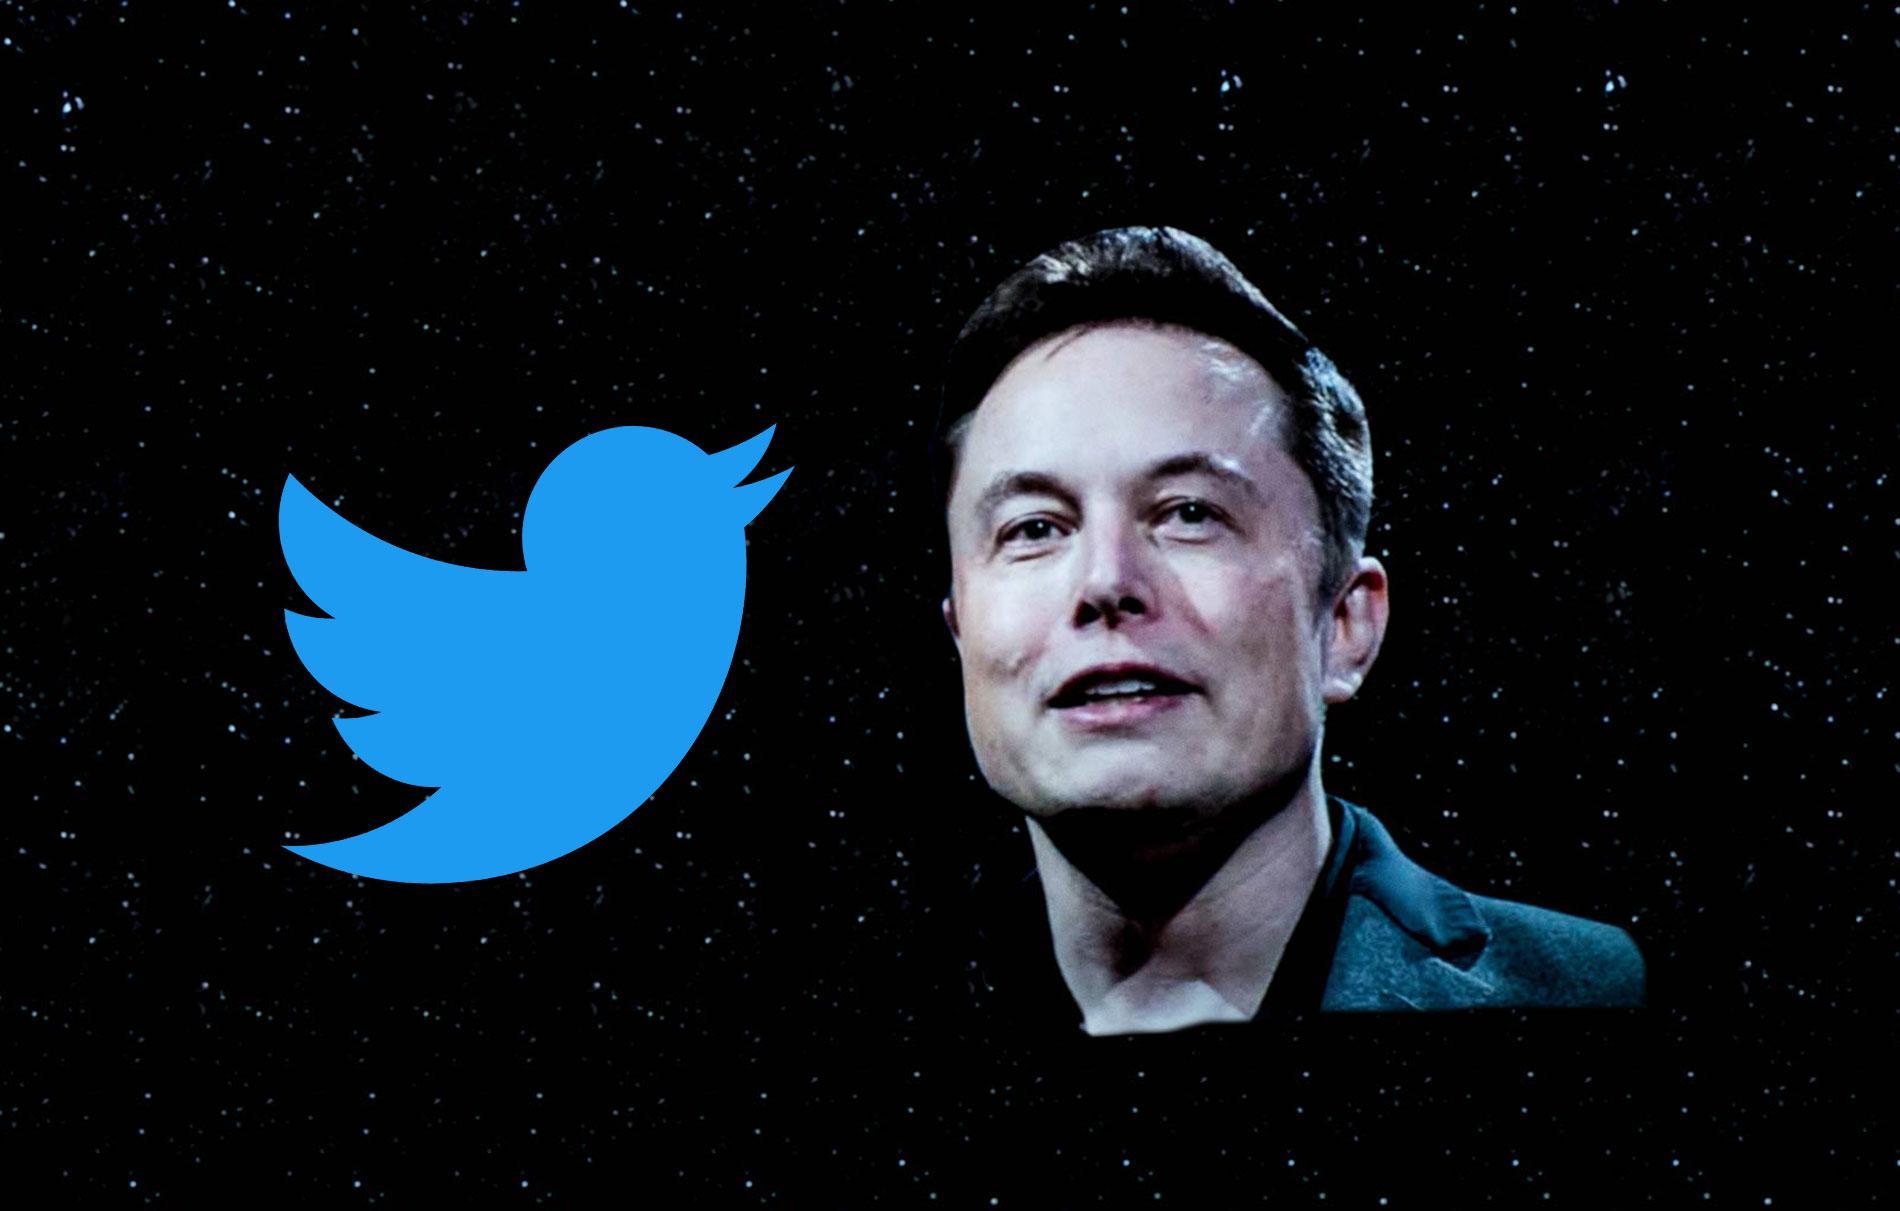 Elon Musk v. Twitter: Waking the “Woke”